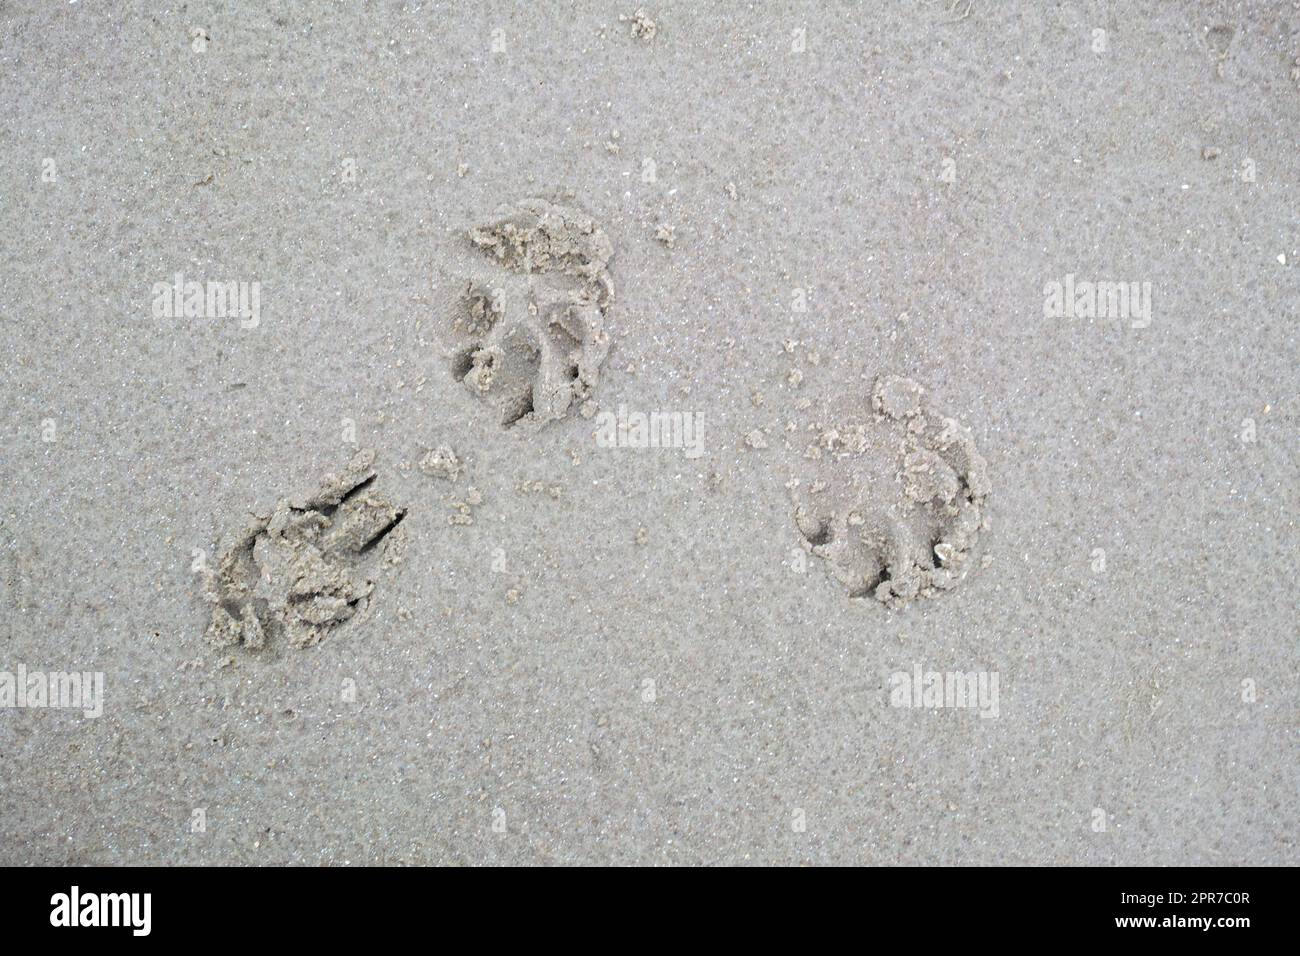 Nahaufnahme über dem Fußabdruck eines Hundes oder einer Katze am Ufer des Strandes. Winzige niedliche kleine Tierpfoten, die an einem Sommertag am Strand oder am See in den nassen und feuchten Sand eingraviert sind. Stockfoto